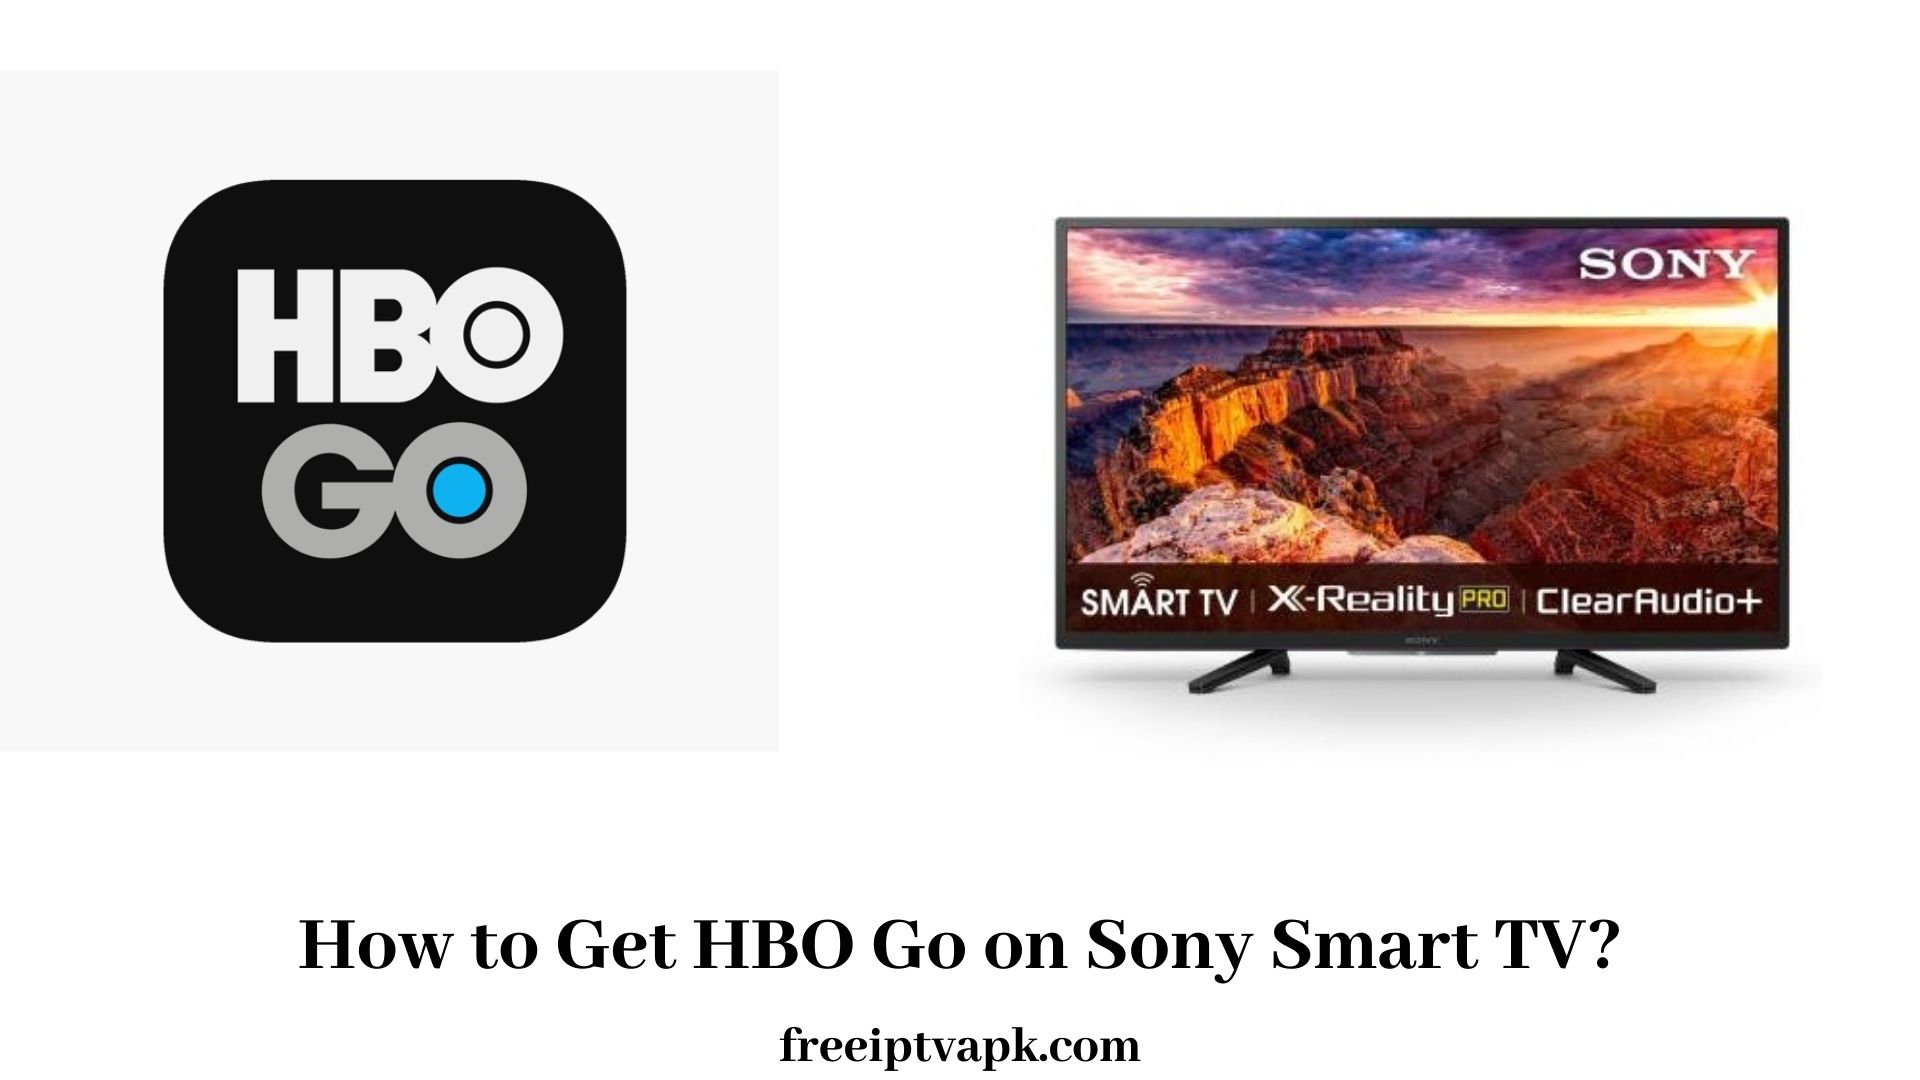 HBO Go on Sony Smart TV